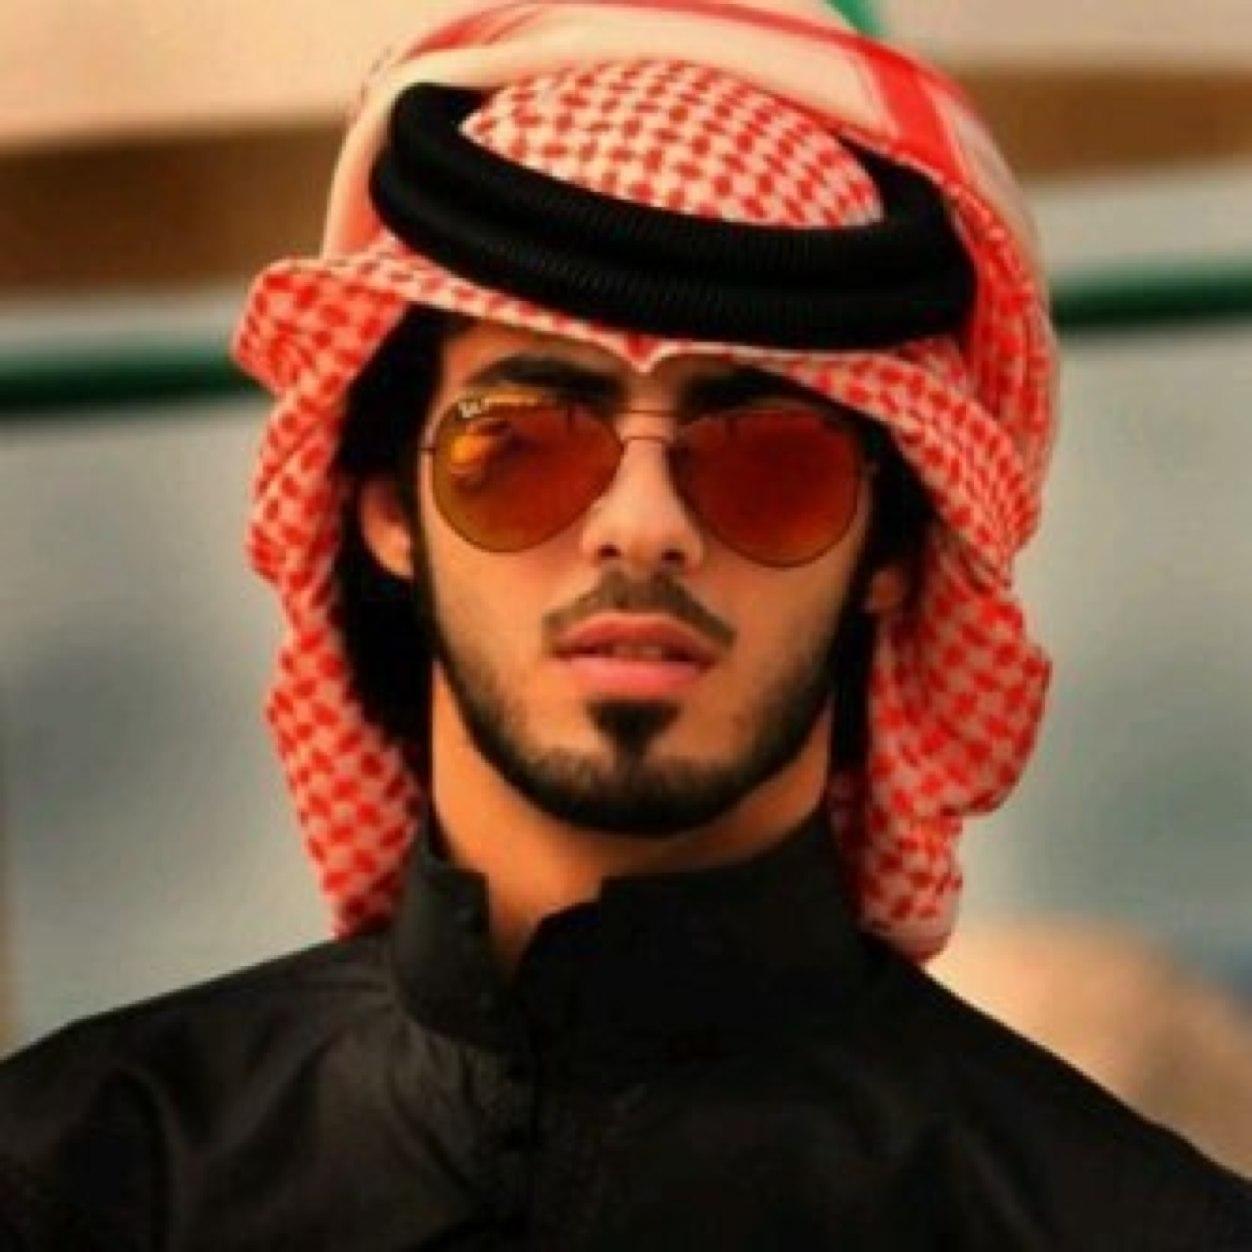 صور رجال سعوديين , احلي شباب المملكة العربية السعودية صور جميلة